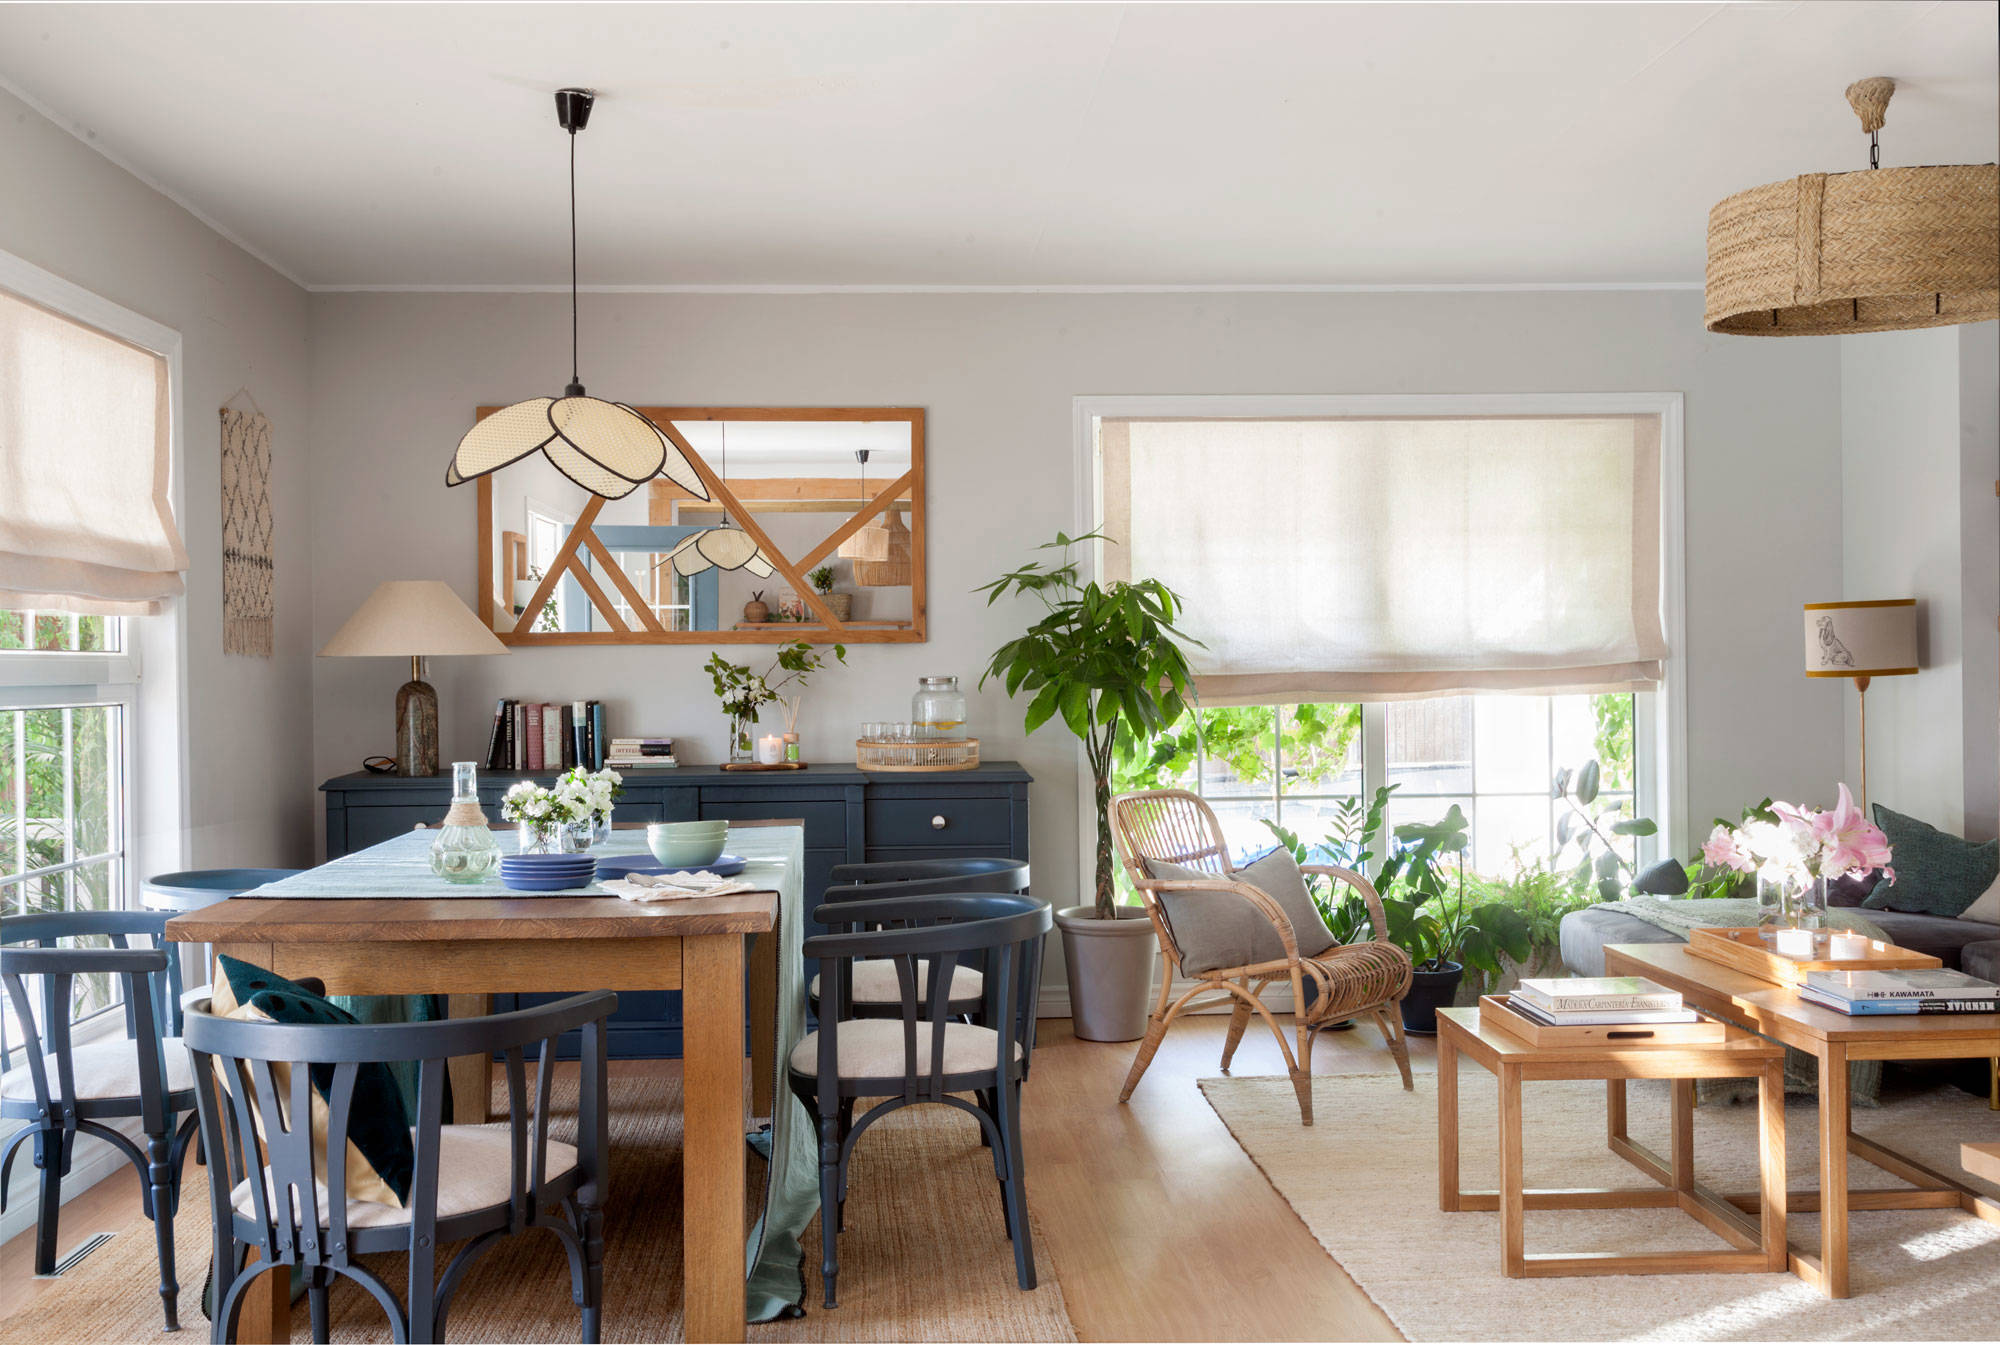 Salón comedor con mobiliario de madera natural o lacada en azul.